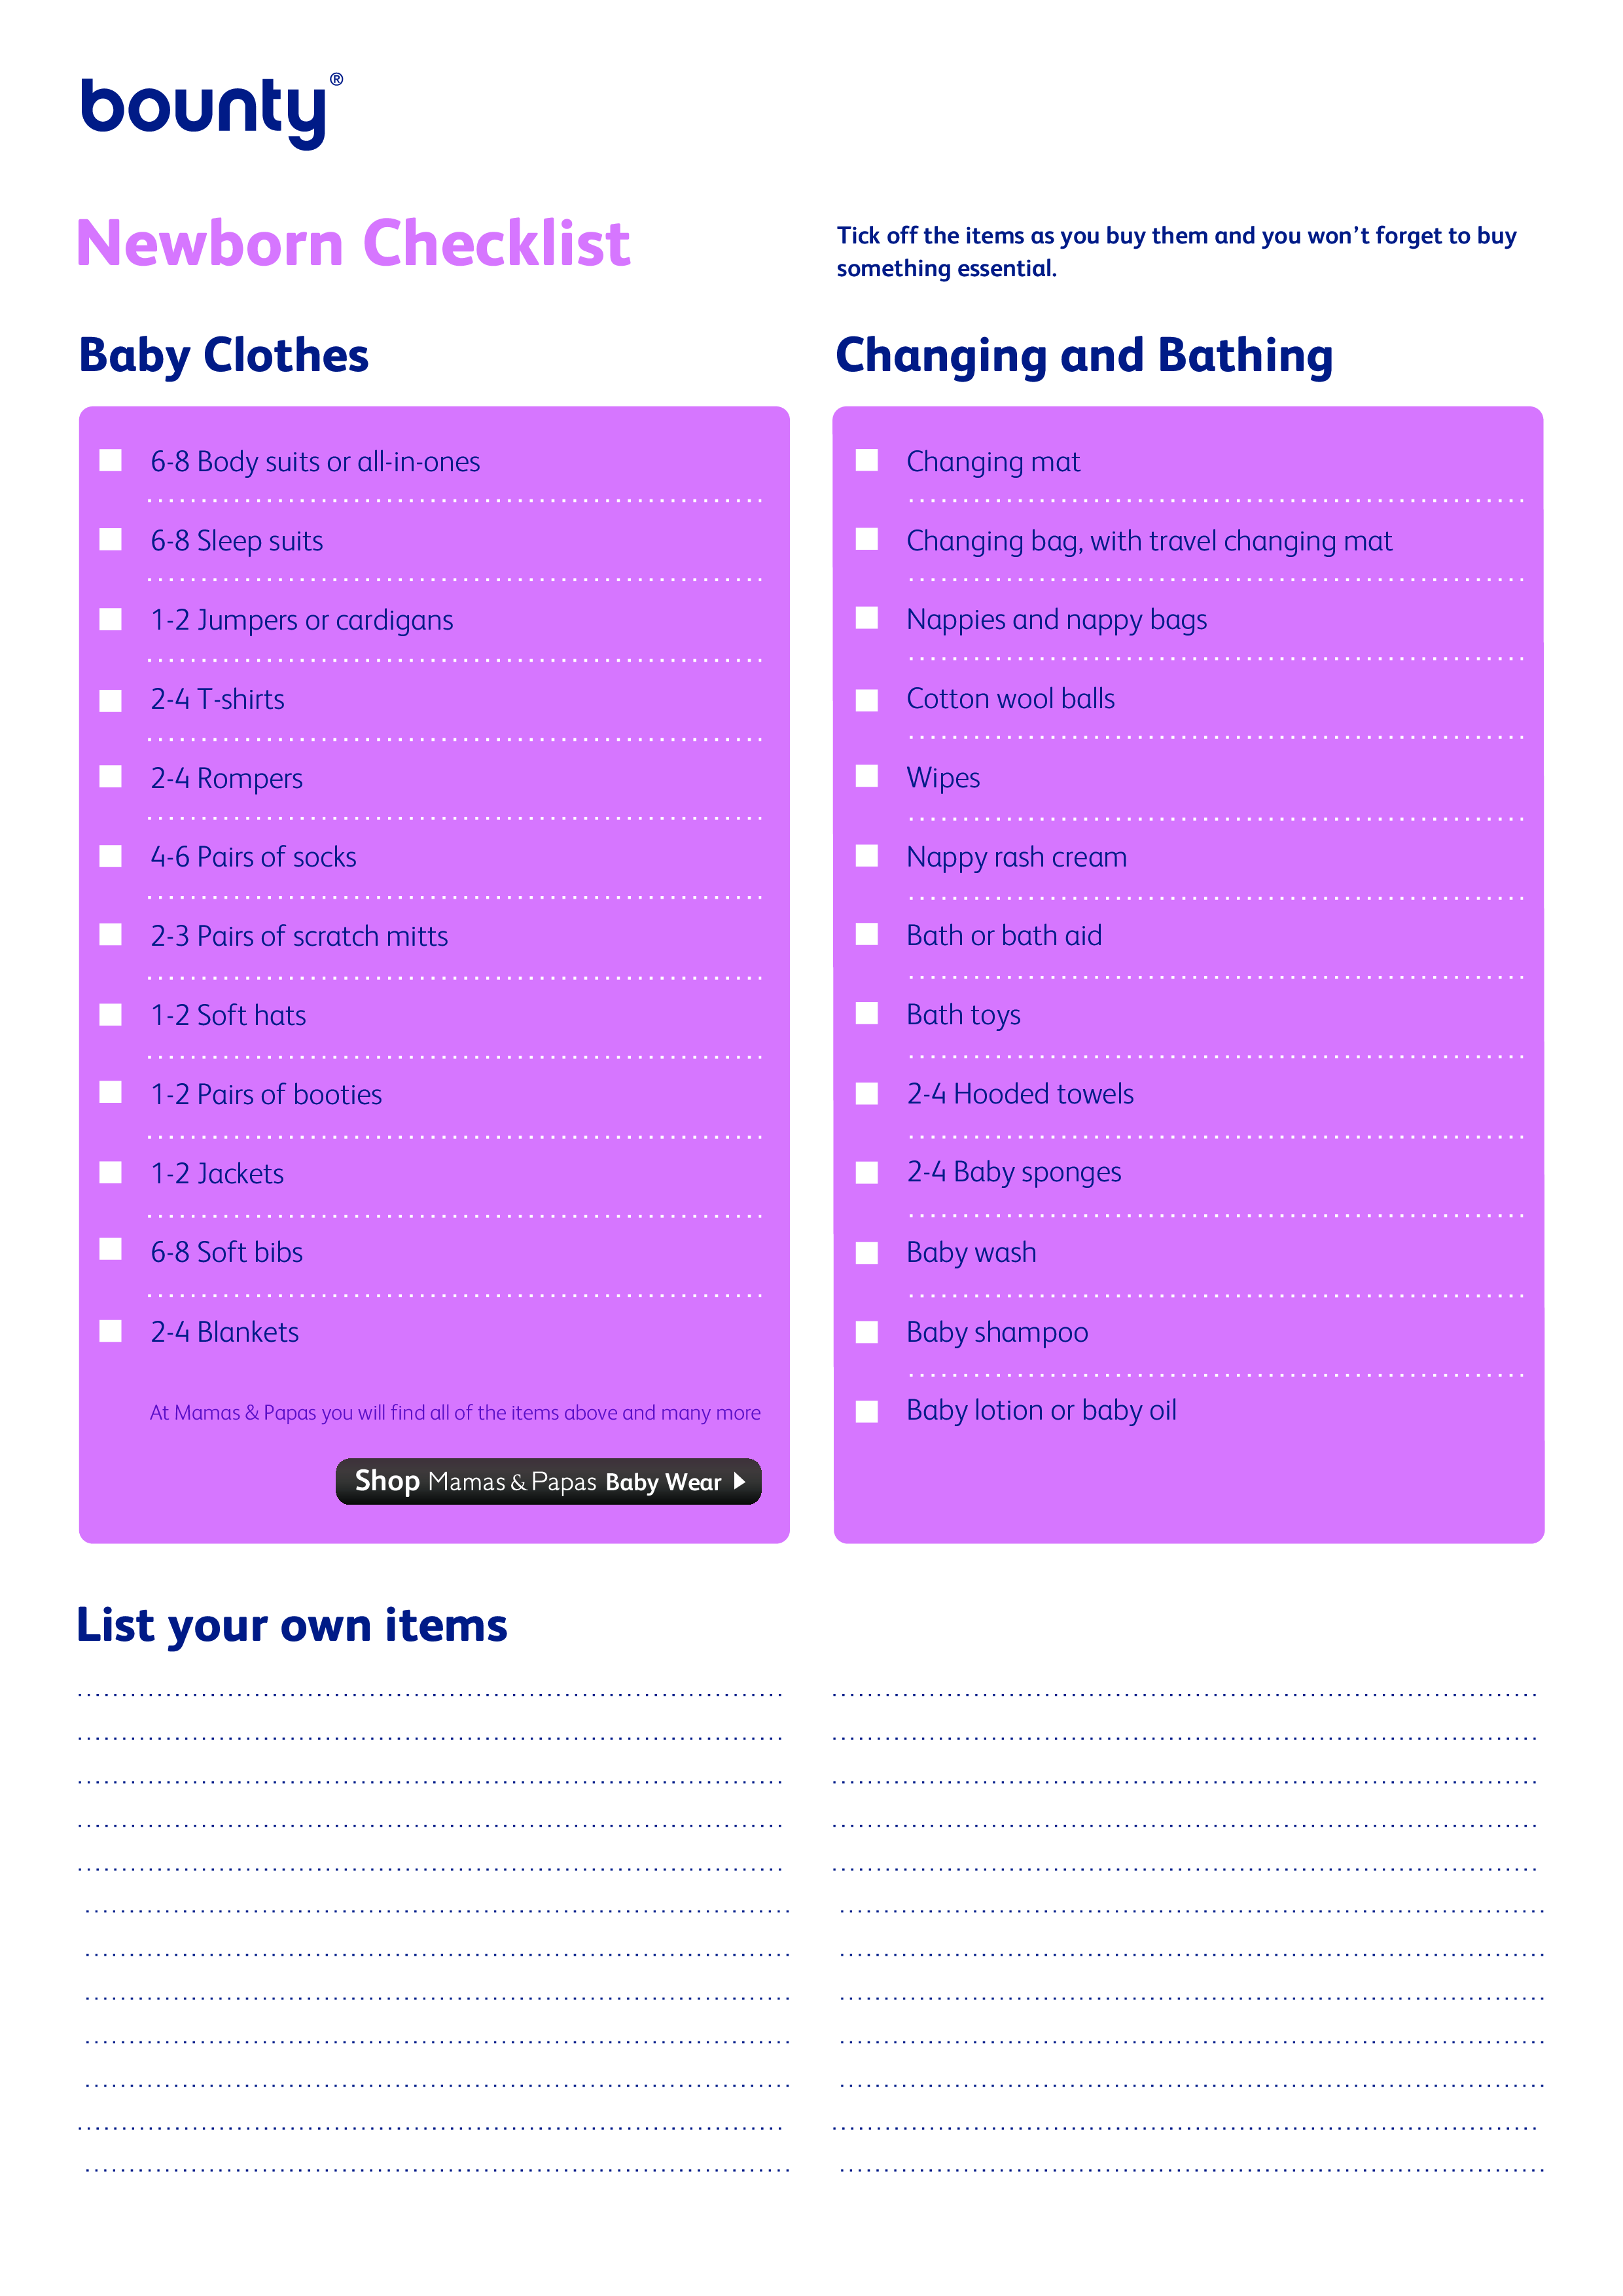 new baby clothes checklist plantilla imagen principal